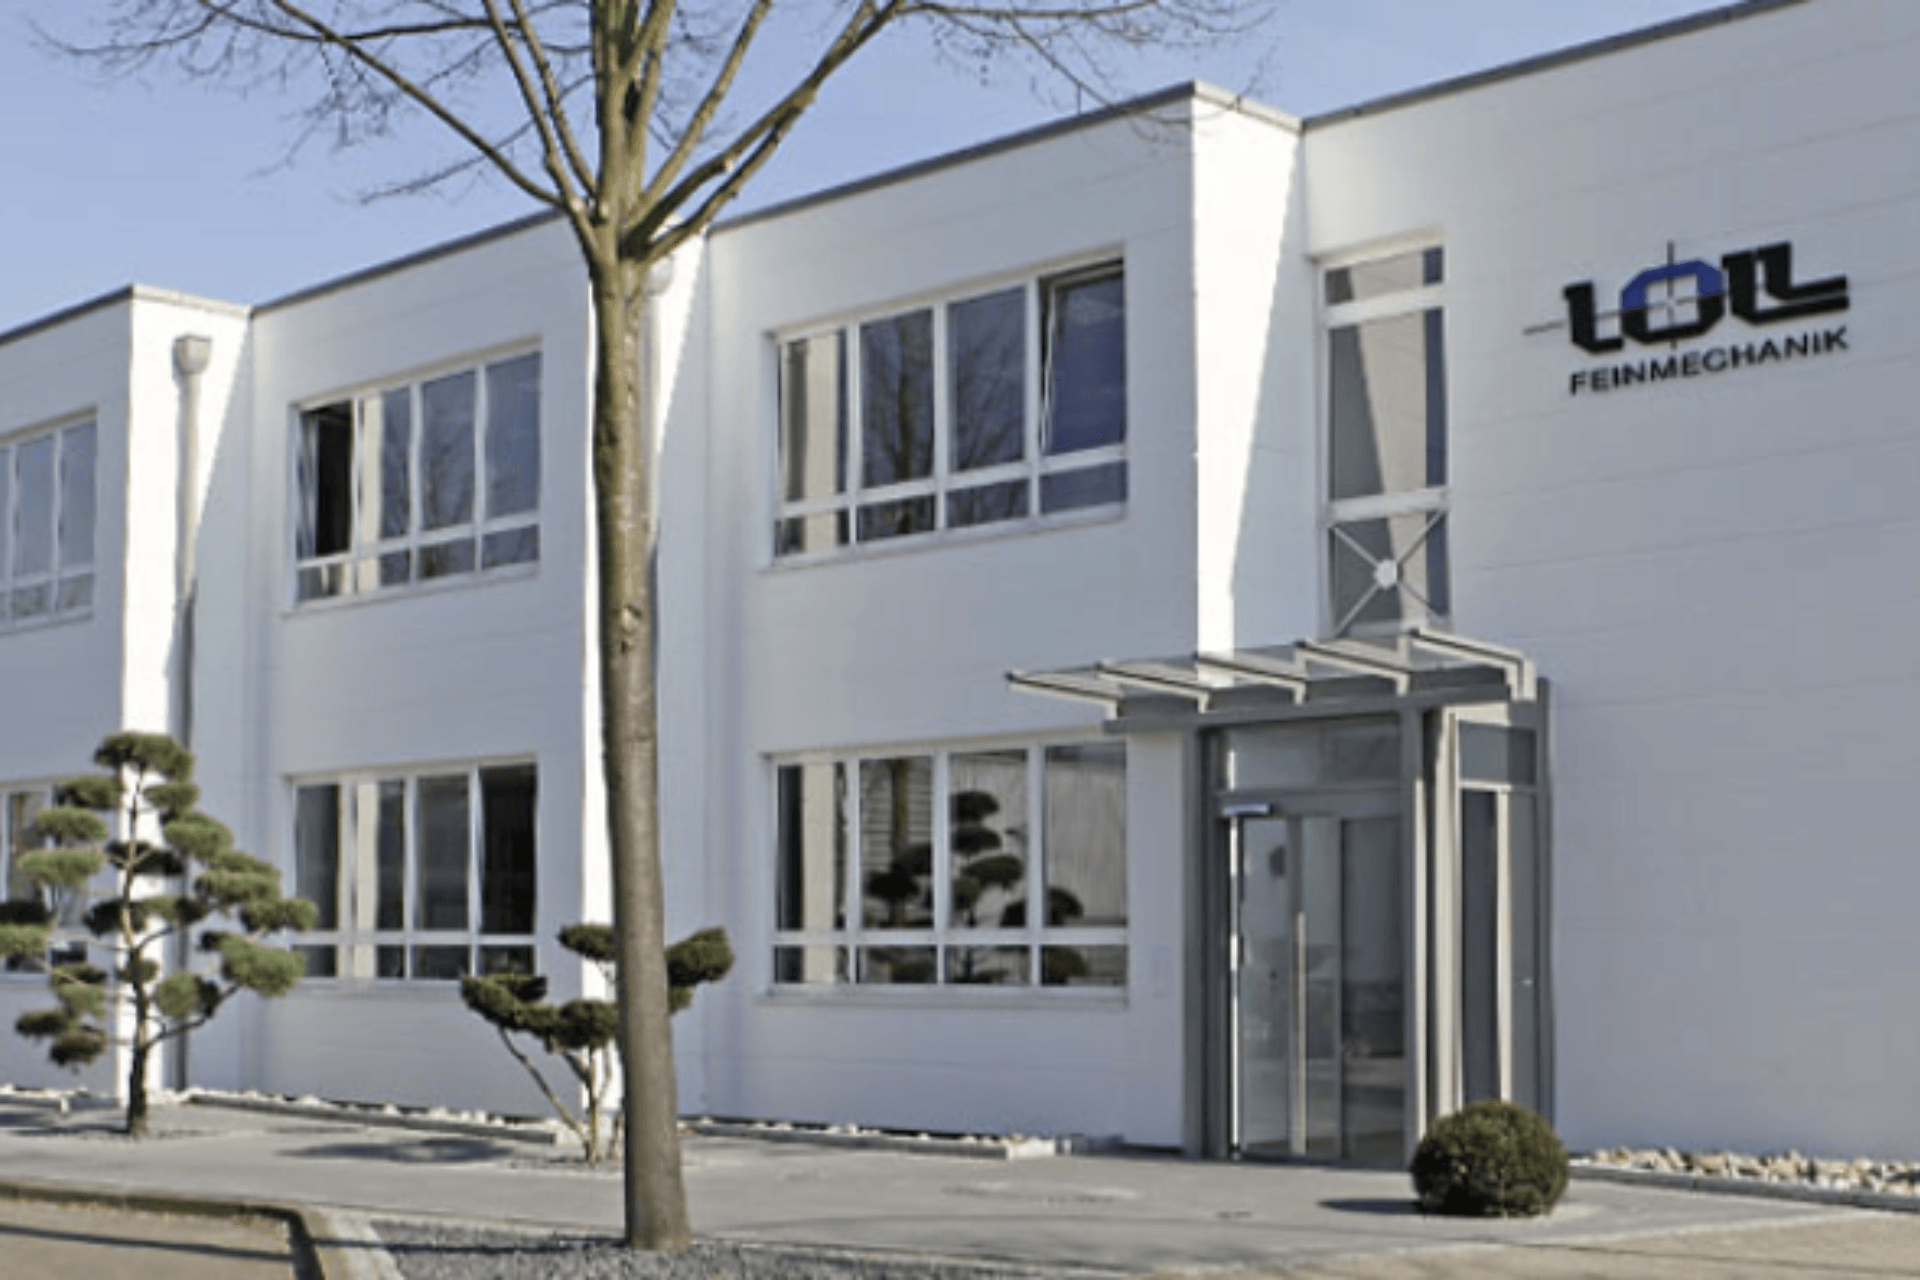 Die Loll Feinmechanik GmbH, die seit 70 Jahren feinmechanische Systeme und Komponenten konstruiert, wollte die Energieeffizienz ihres Werks in Tornesch in Schleswig-Holstein verbessern.